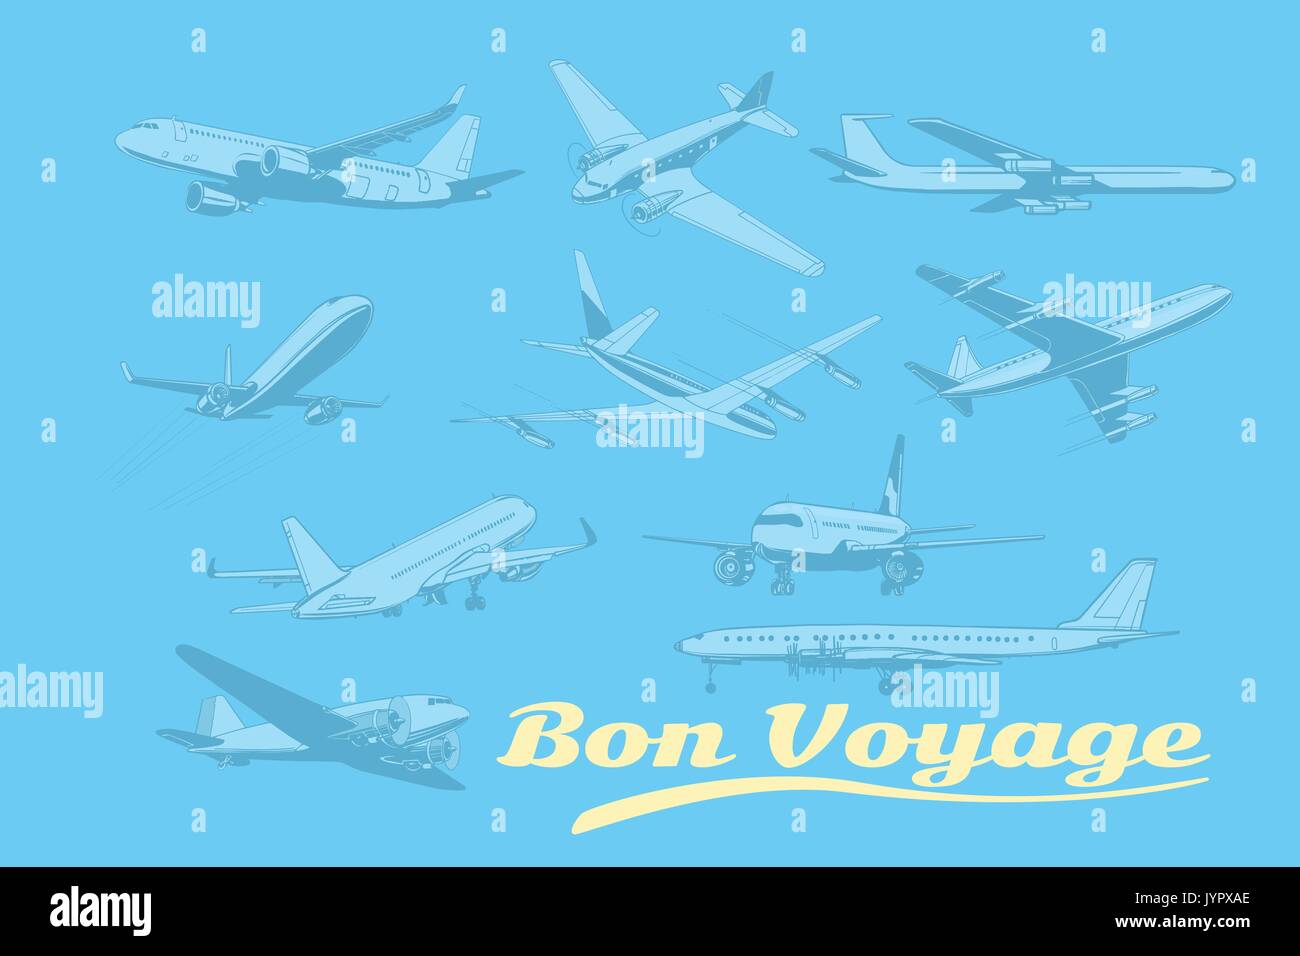 Bon Voyage, von Flugzeugen Luftverkehr eingestellt. Flugzeug Luftfahrt reisen reise Tourismus Luftverkehr. Pop Art retro Vektor illustration Stock Vektor